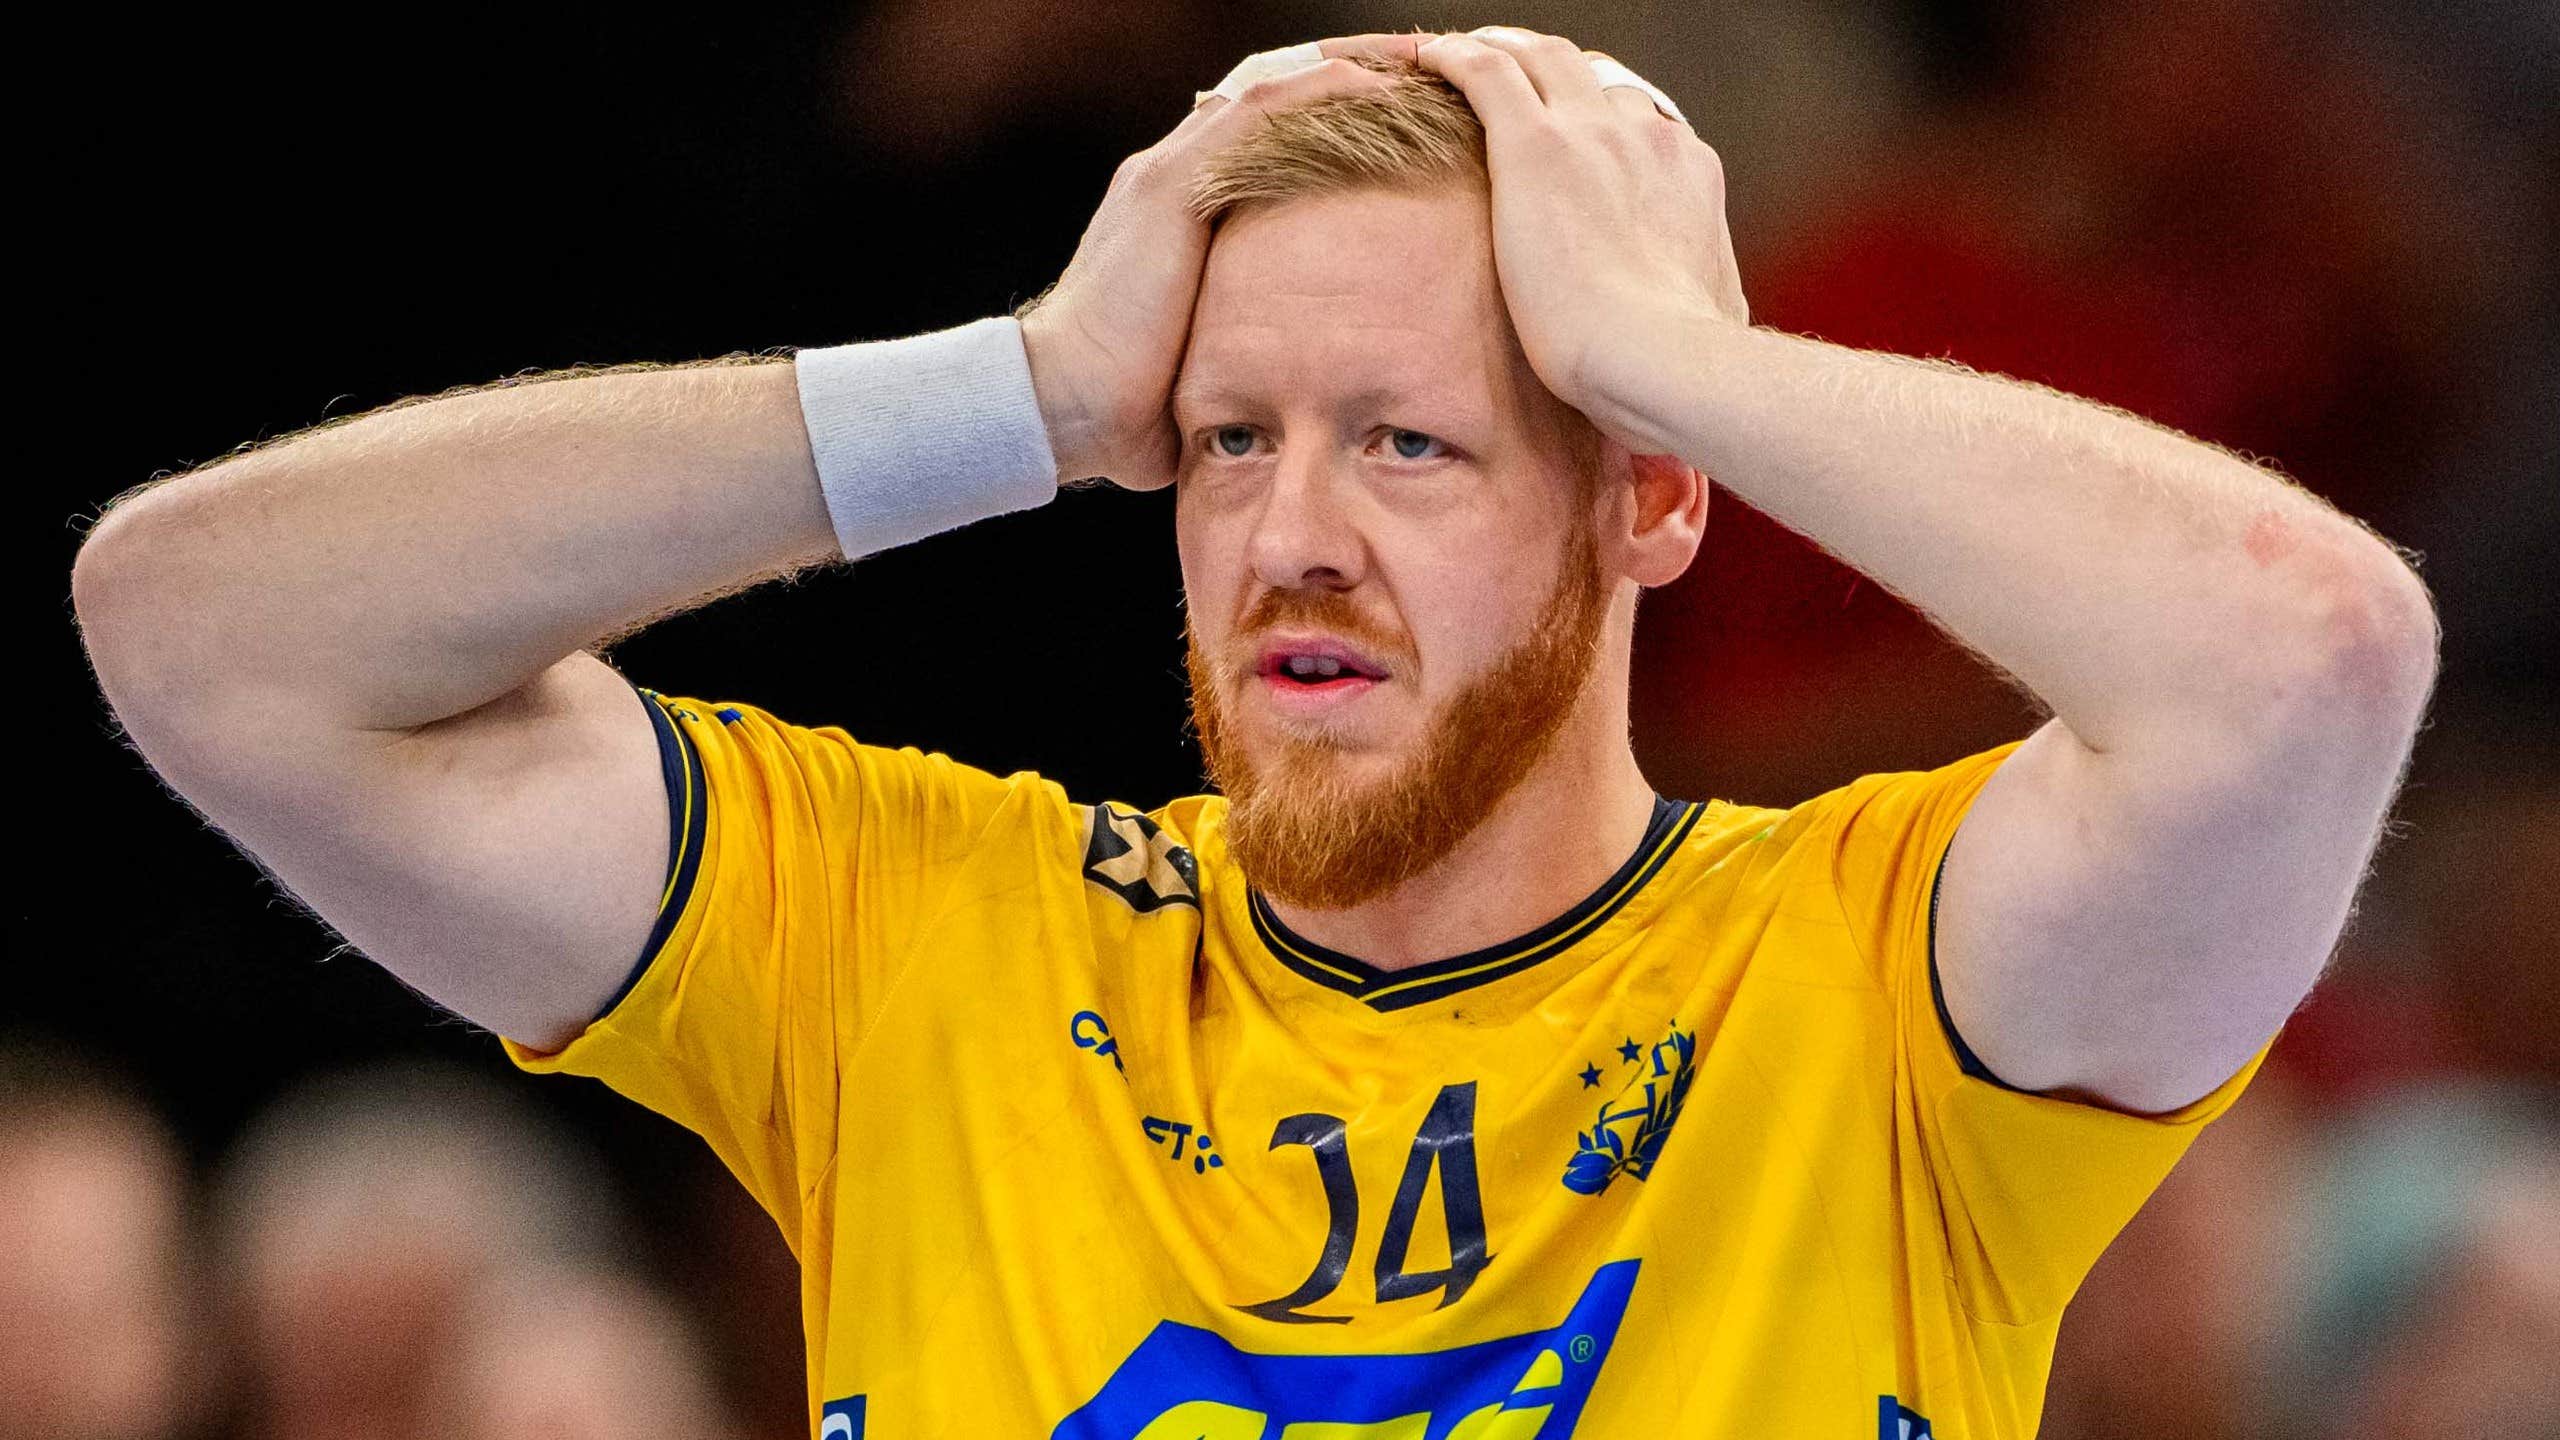 Svensk mardröm i VM-lottning